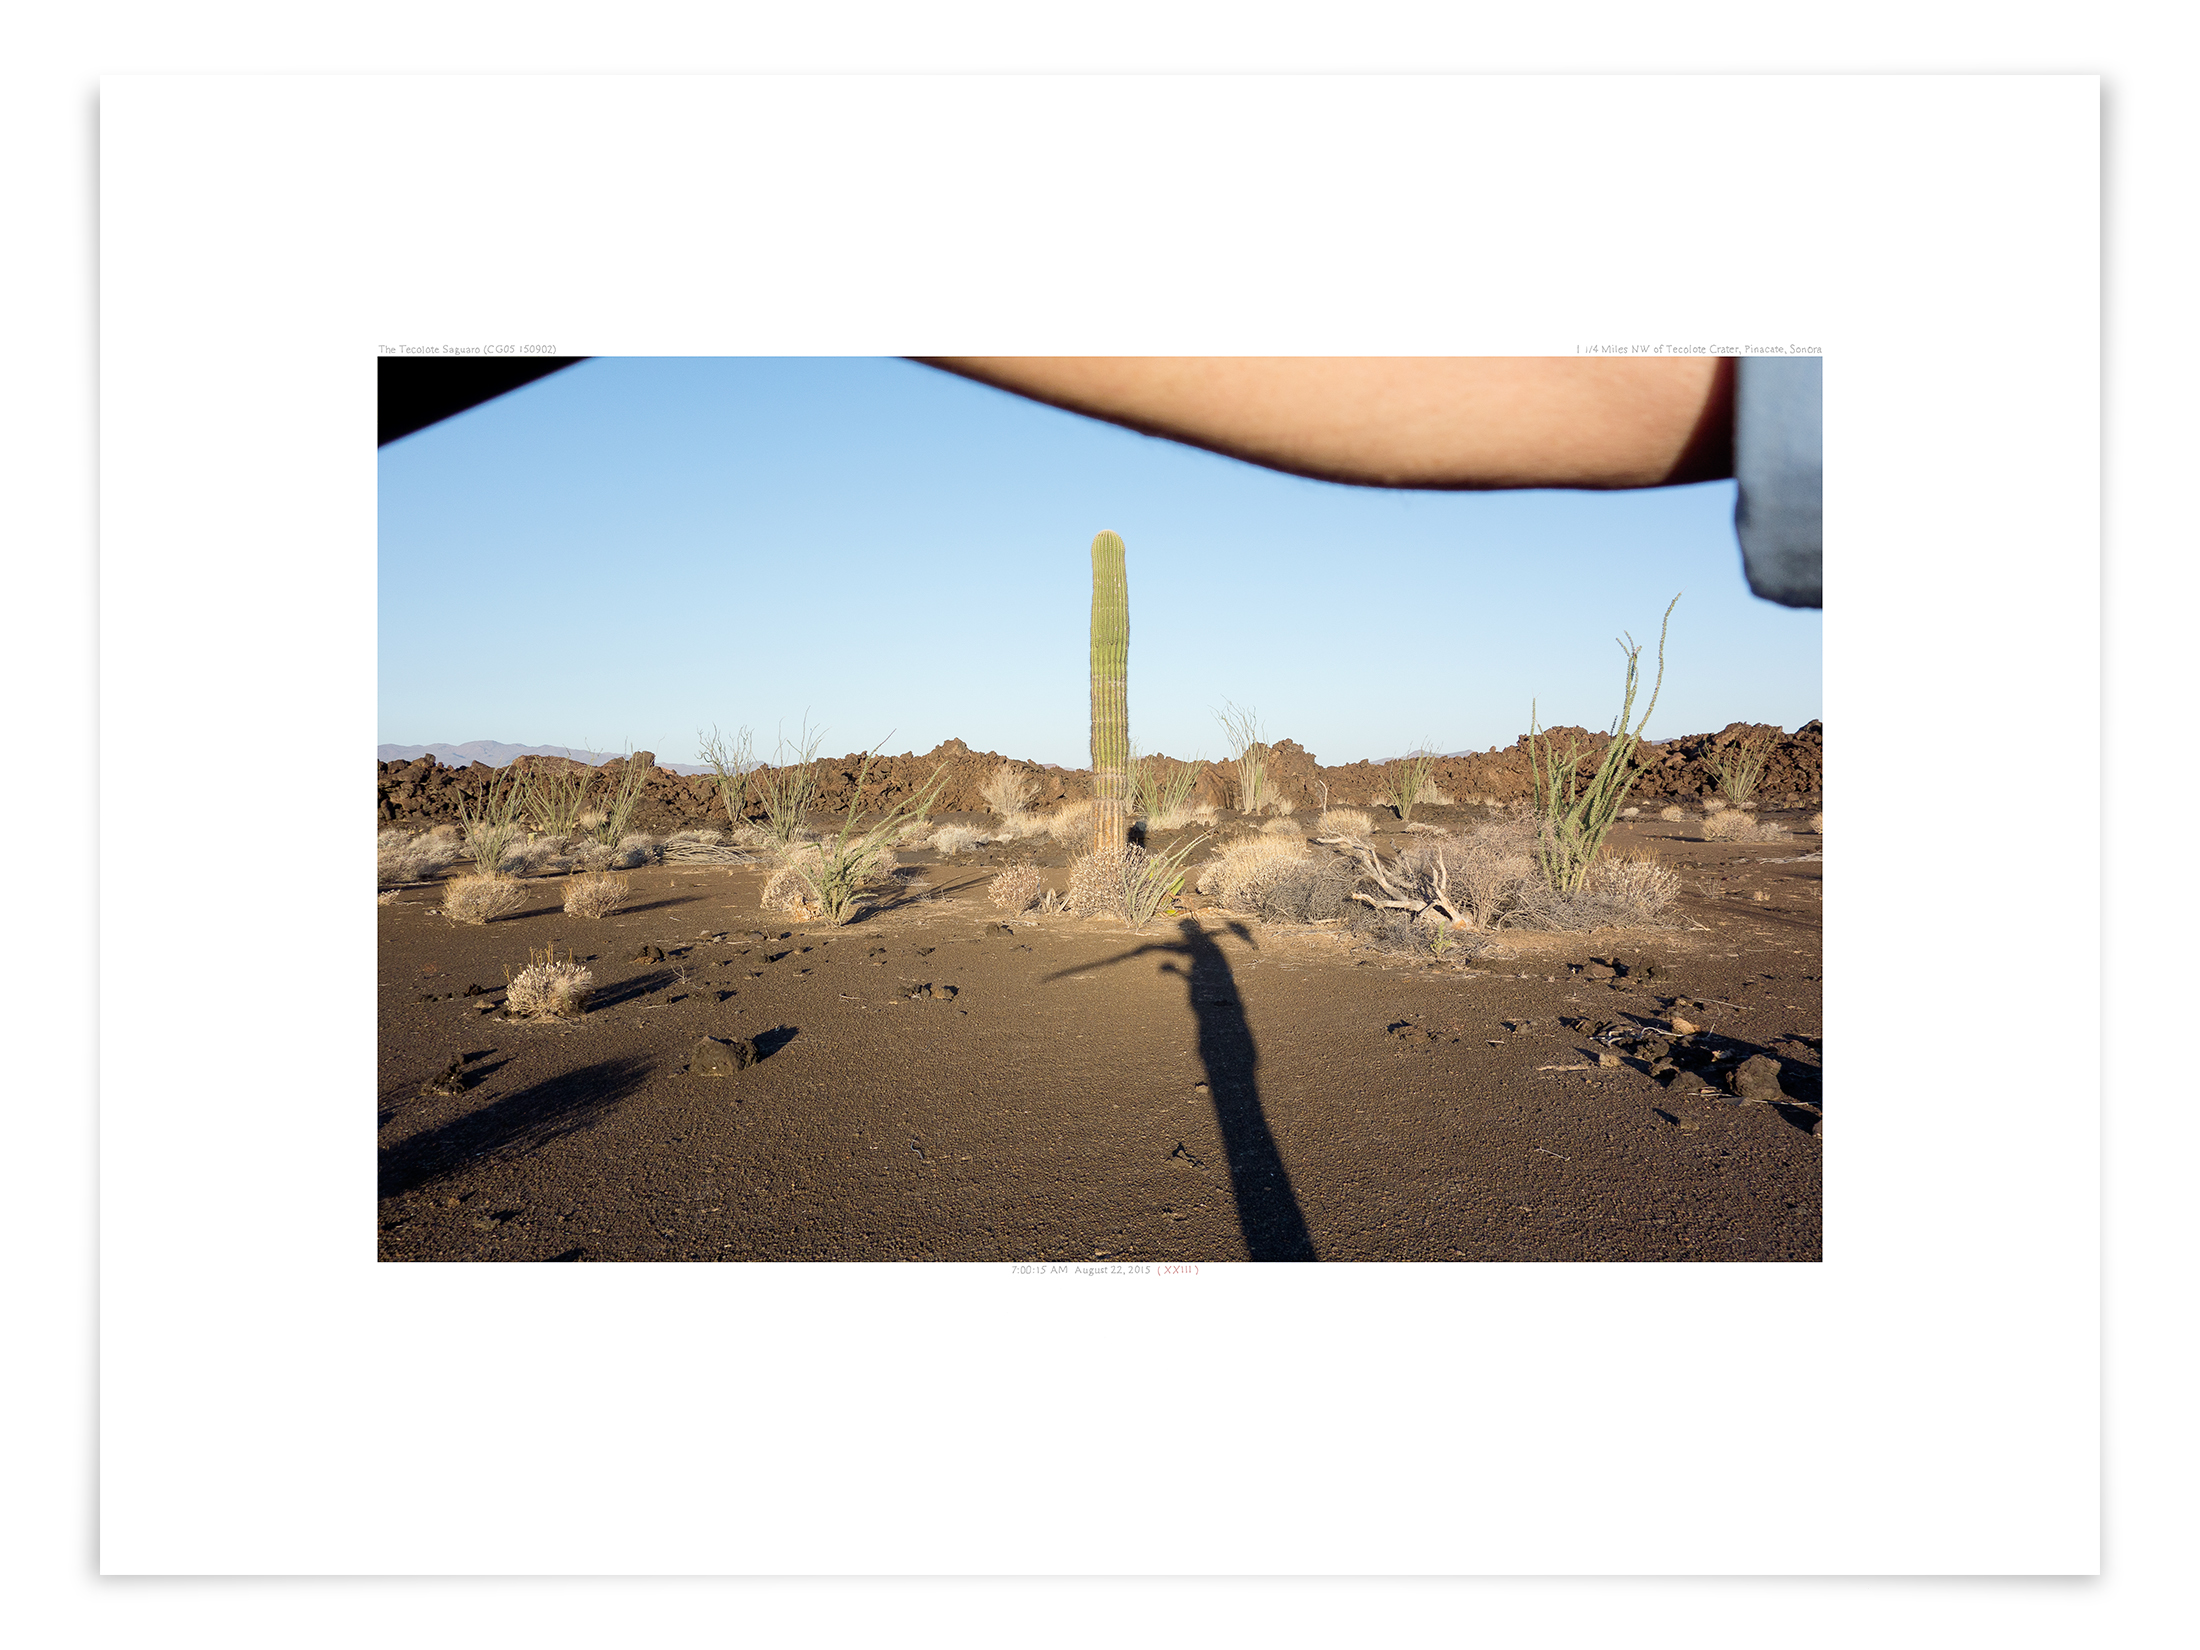   The Tecolote Saguaro (CG05 150902)   18 x 24 in (46 x 61 cm)                      